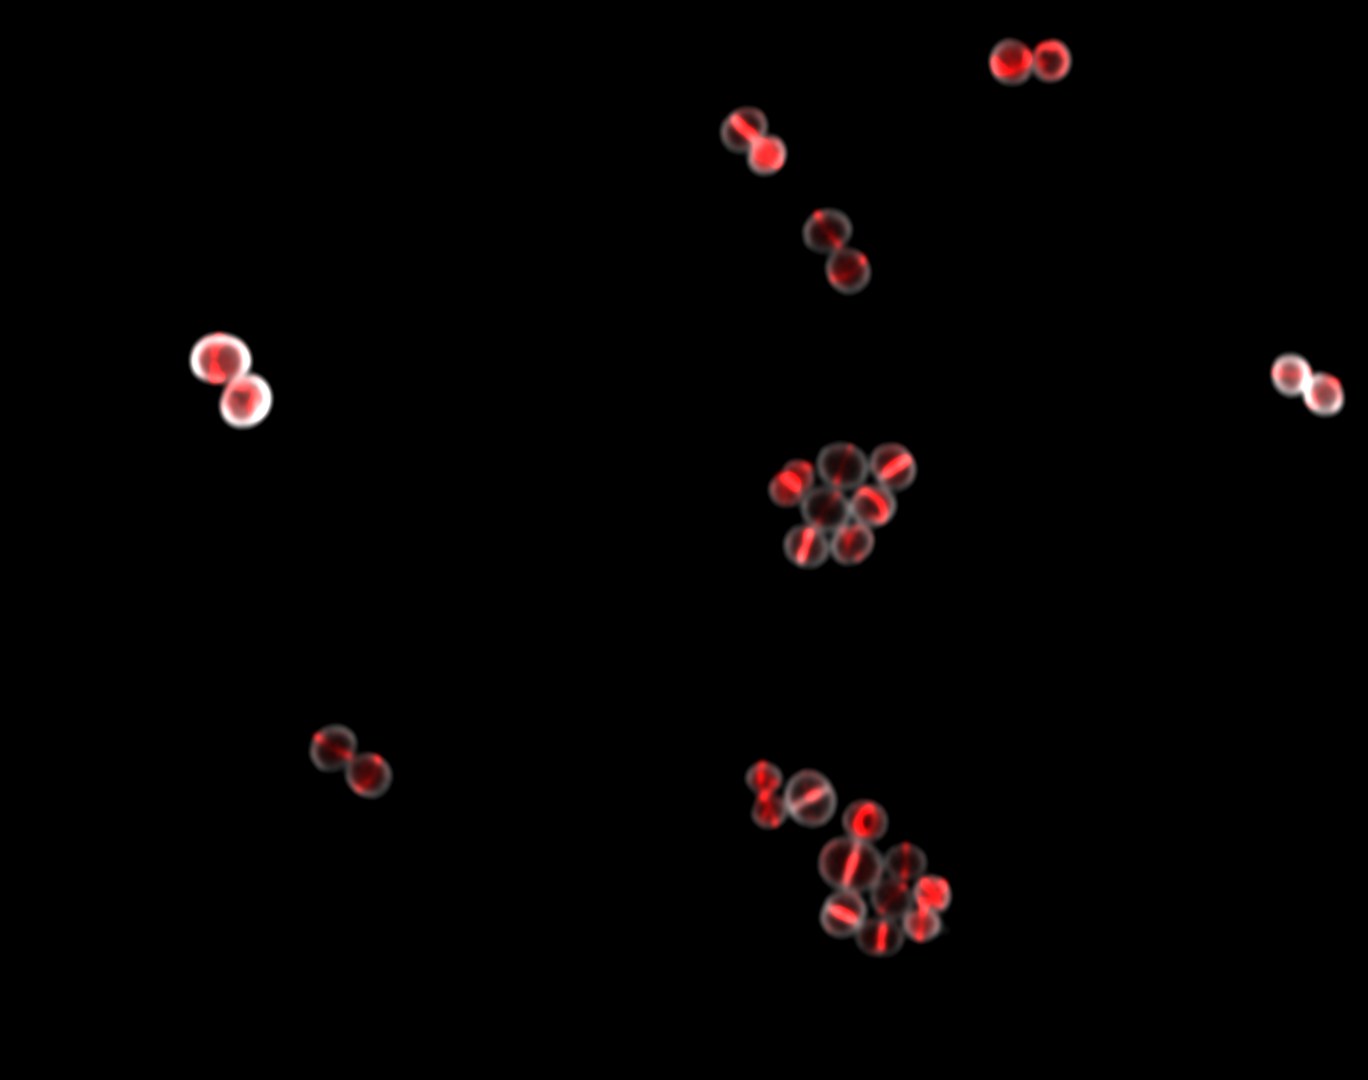 Bakterium Staphylococcus aureus unter dem Mikroskop: Rot fluoreszierendes Zellteilungsprotein FtsZ baut sogenannten Z-Ring in der Mitte der Zelle auf.